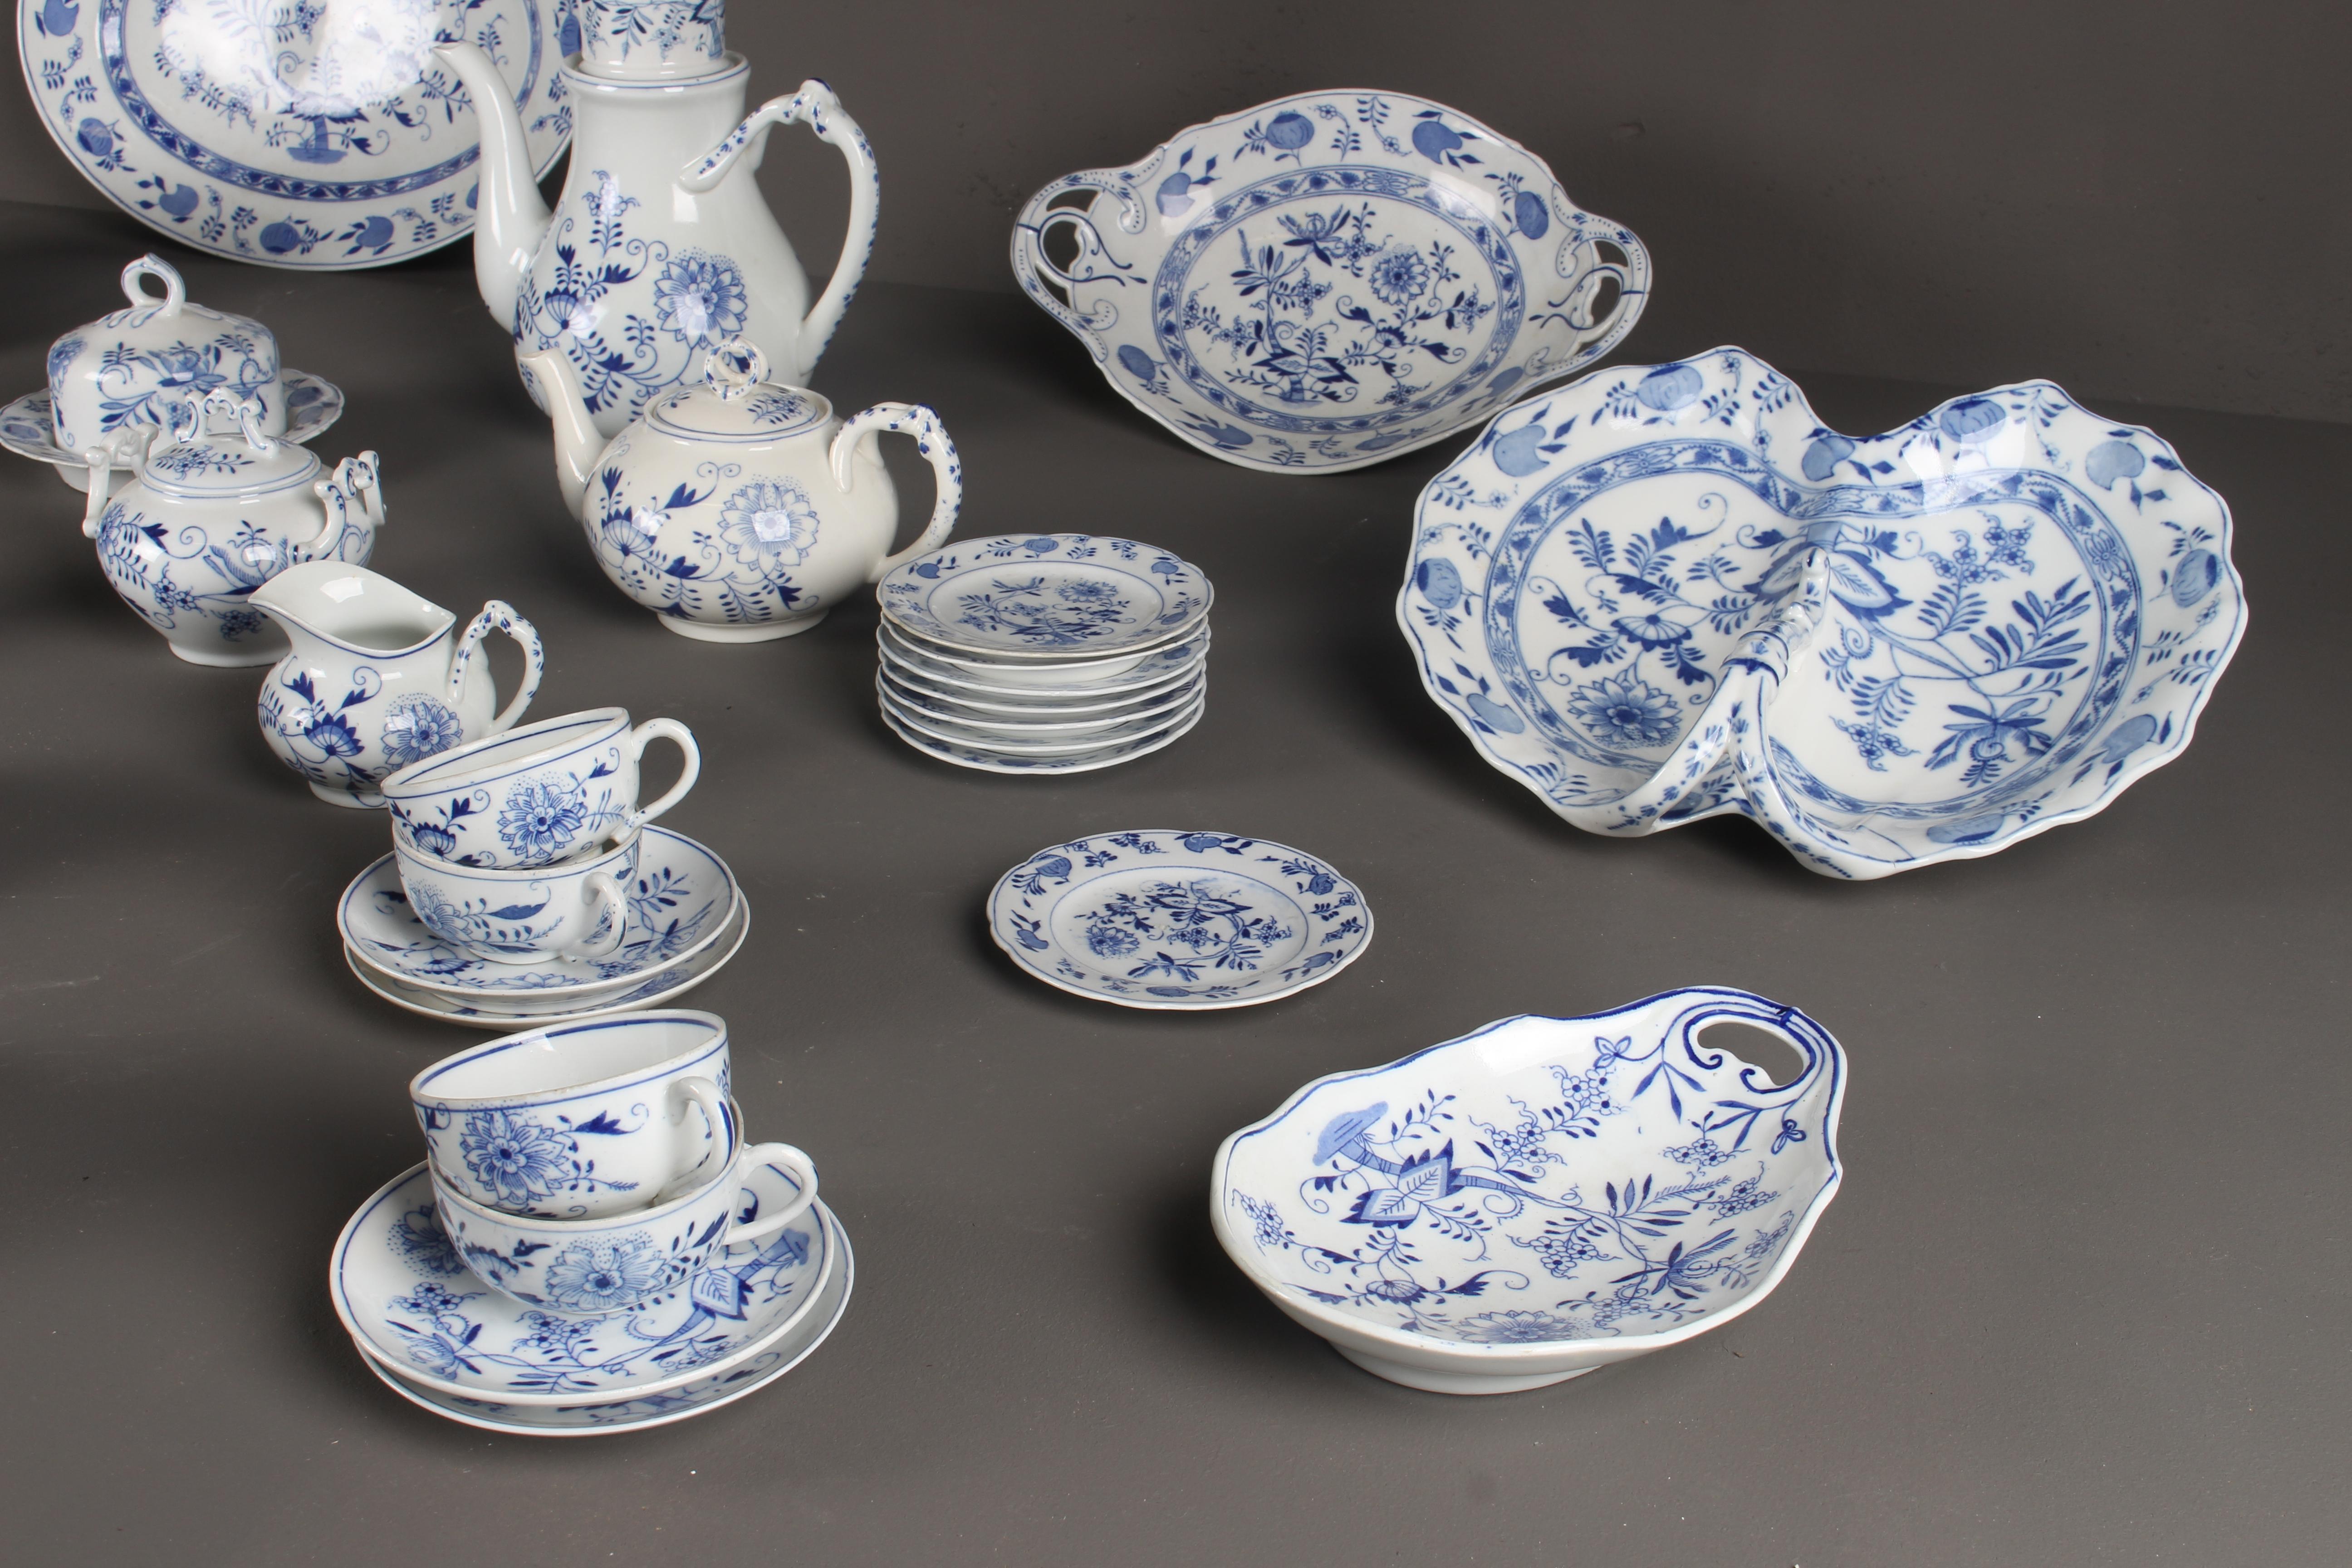 Rare Dutch Louis Regout Large 60-Piece Porcelain Blue Onion Table Service, 1890 For Sale 5